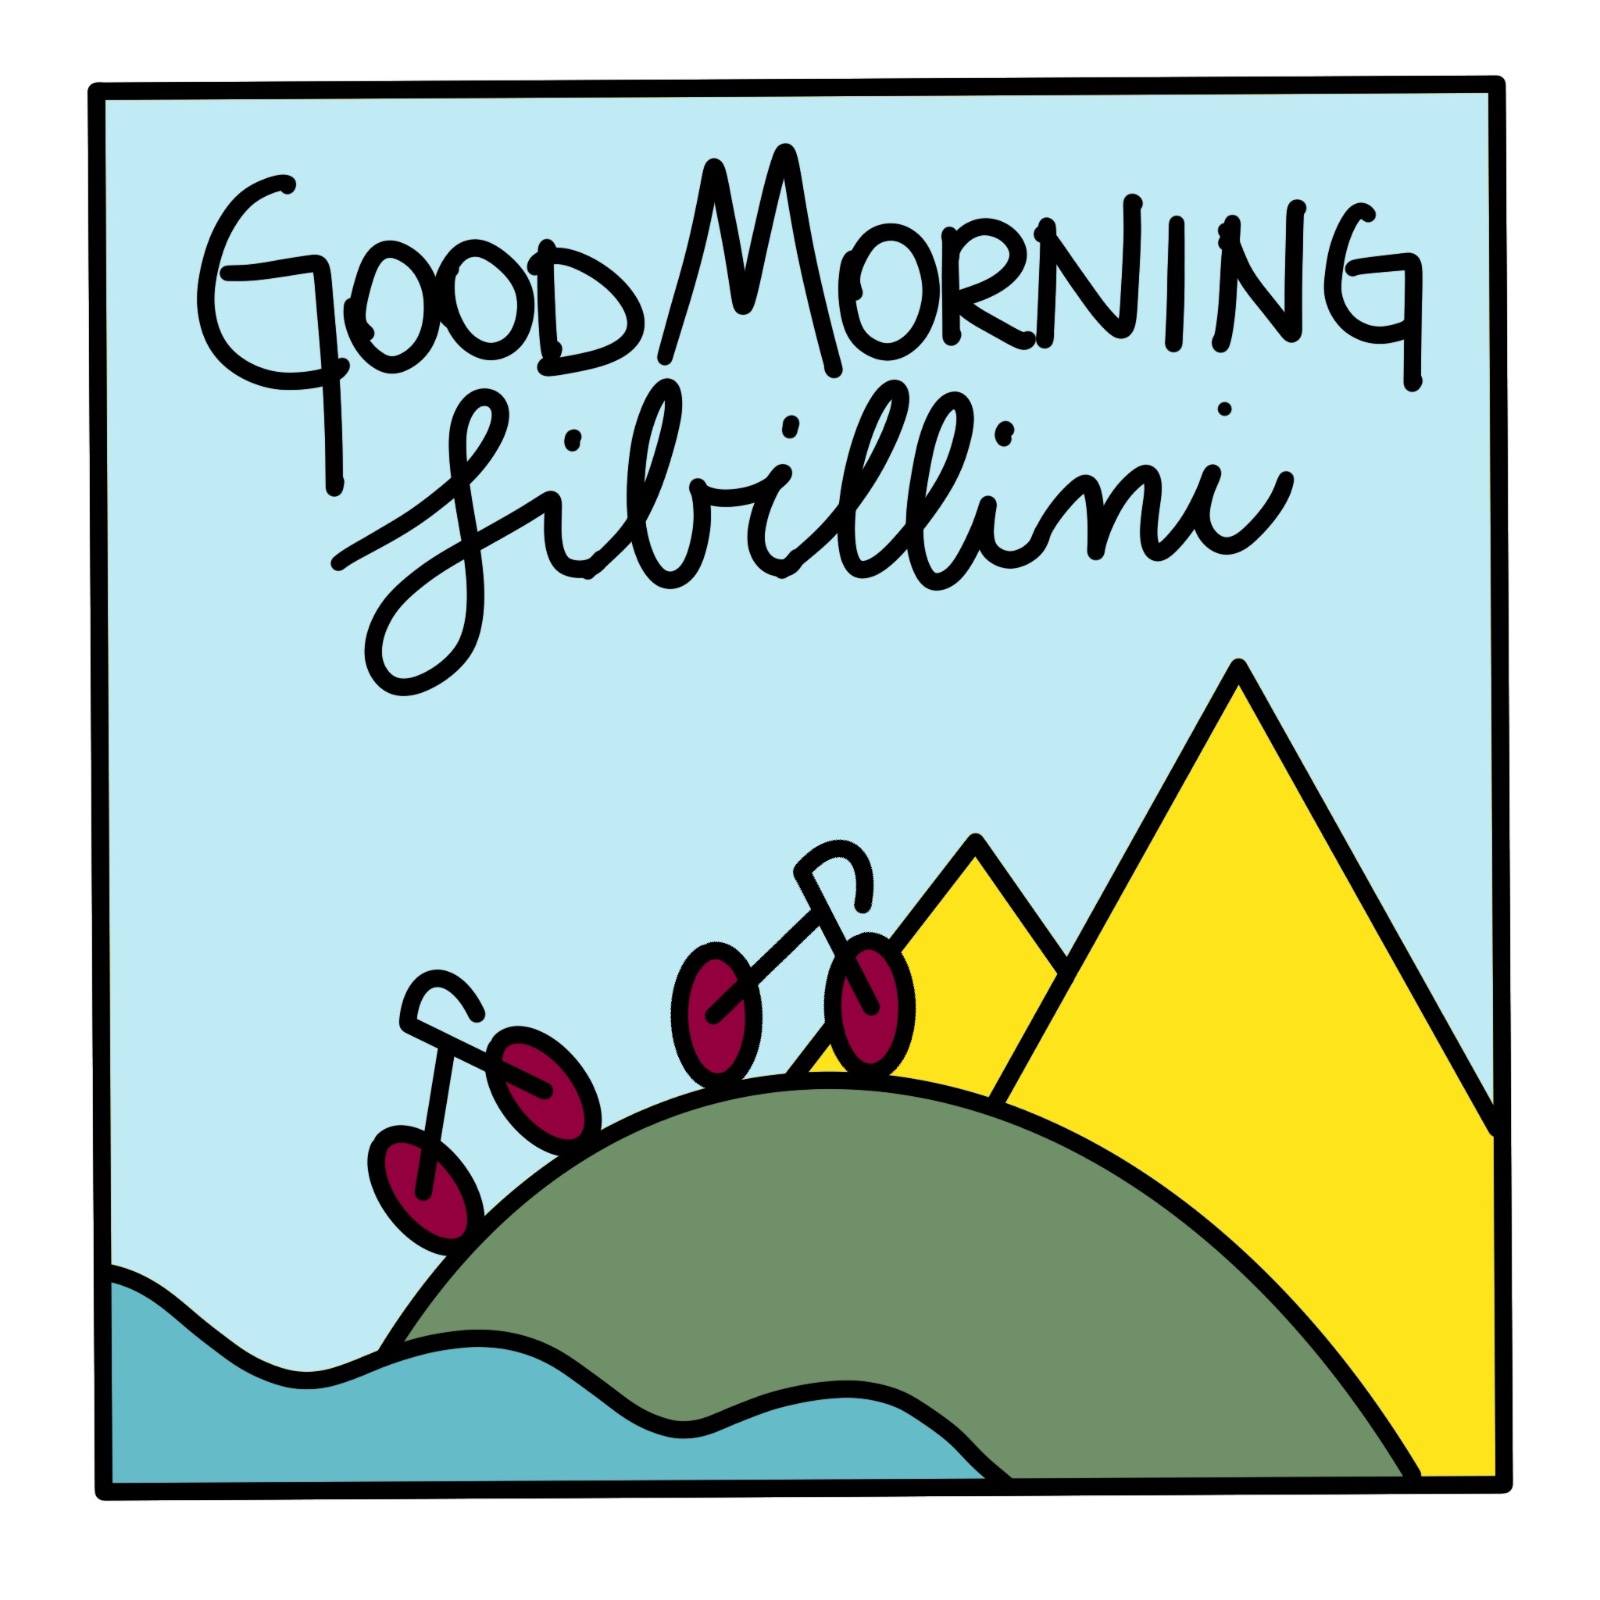 Goodmorning Sibillini